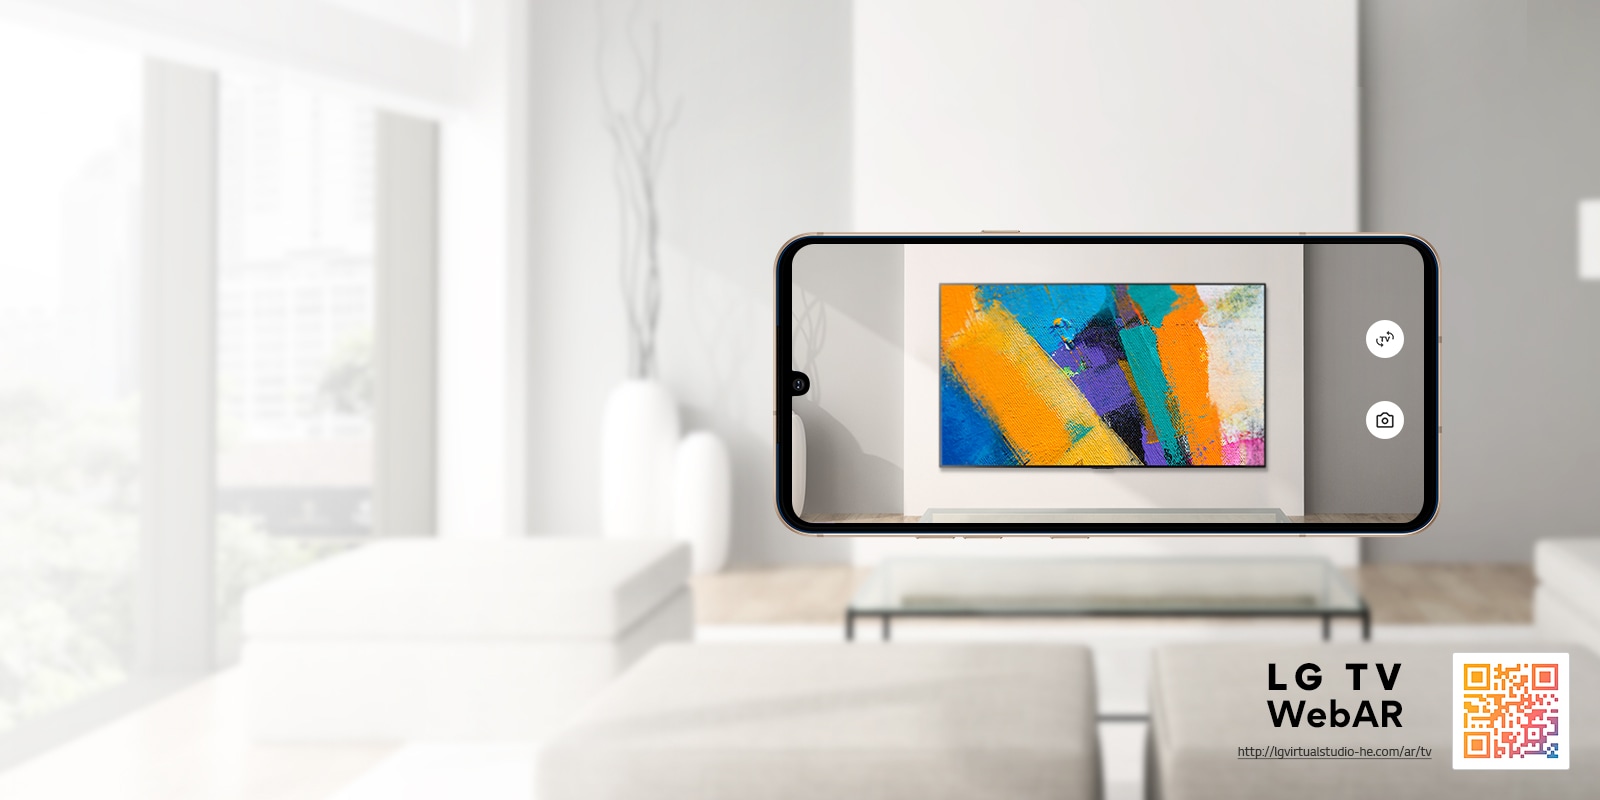 Ovo je veb-simulacija izmenjene realnosti sa slikom LG OLED TV-a. Slike mobilnih telefona preklapaju se minimalističkom prostoru. U donjem desnom uglu nalazi se QR kod.